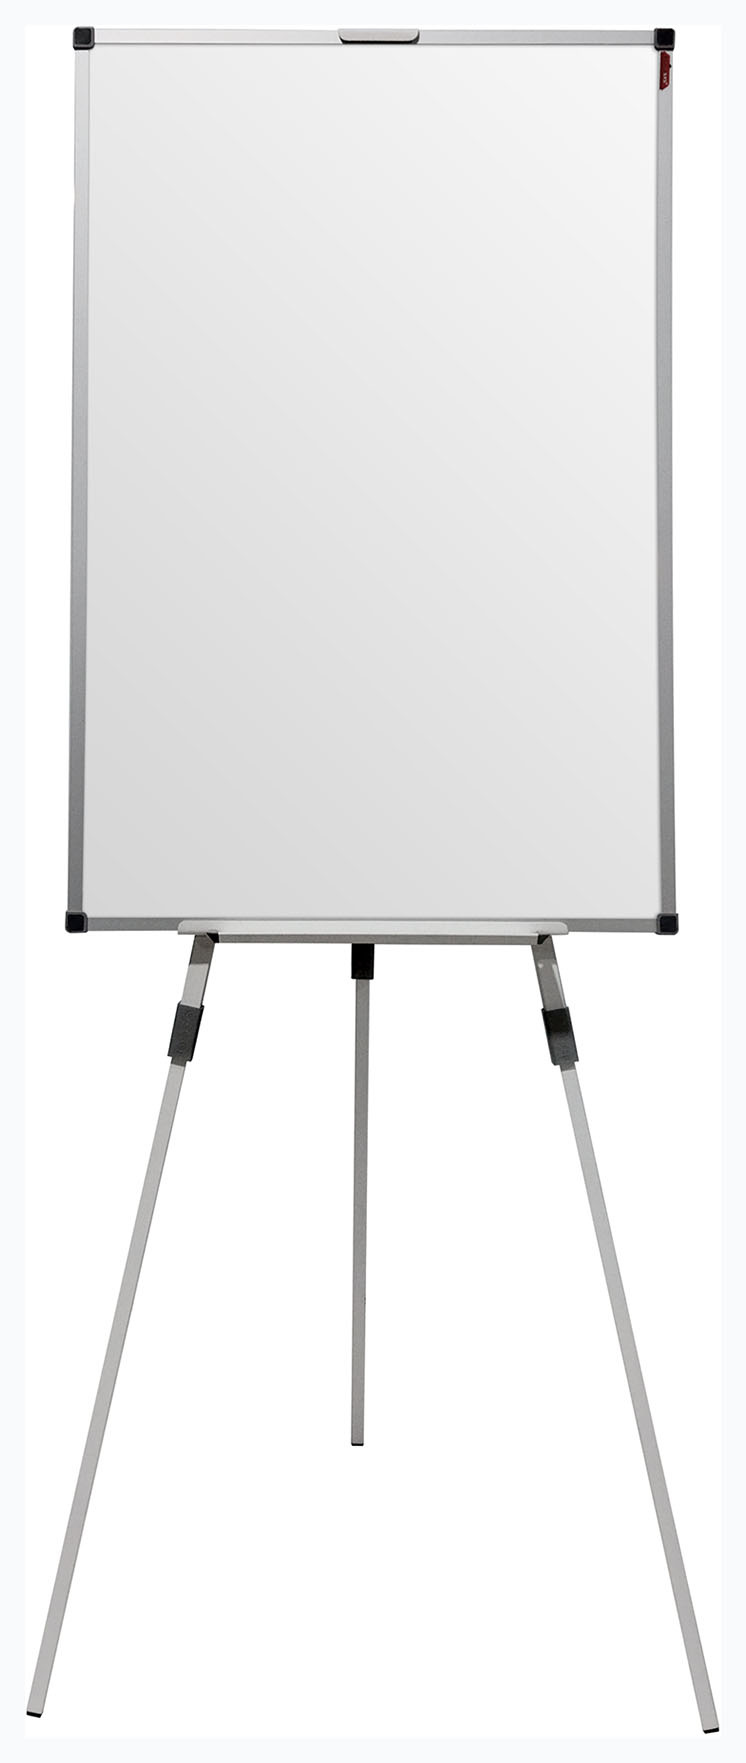 Демонстрационная доска BoardSYS Ecoboard Molbert 20МБ70 флипчарт, 70x100см, лак (белый)/алюминий (серый), на треноге (20МБ70)